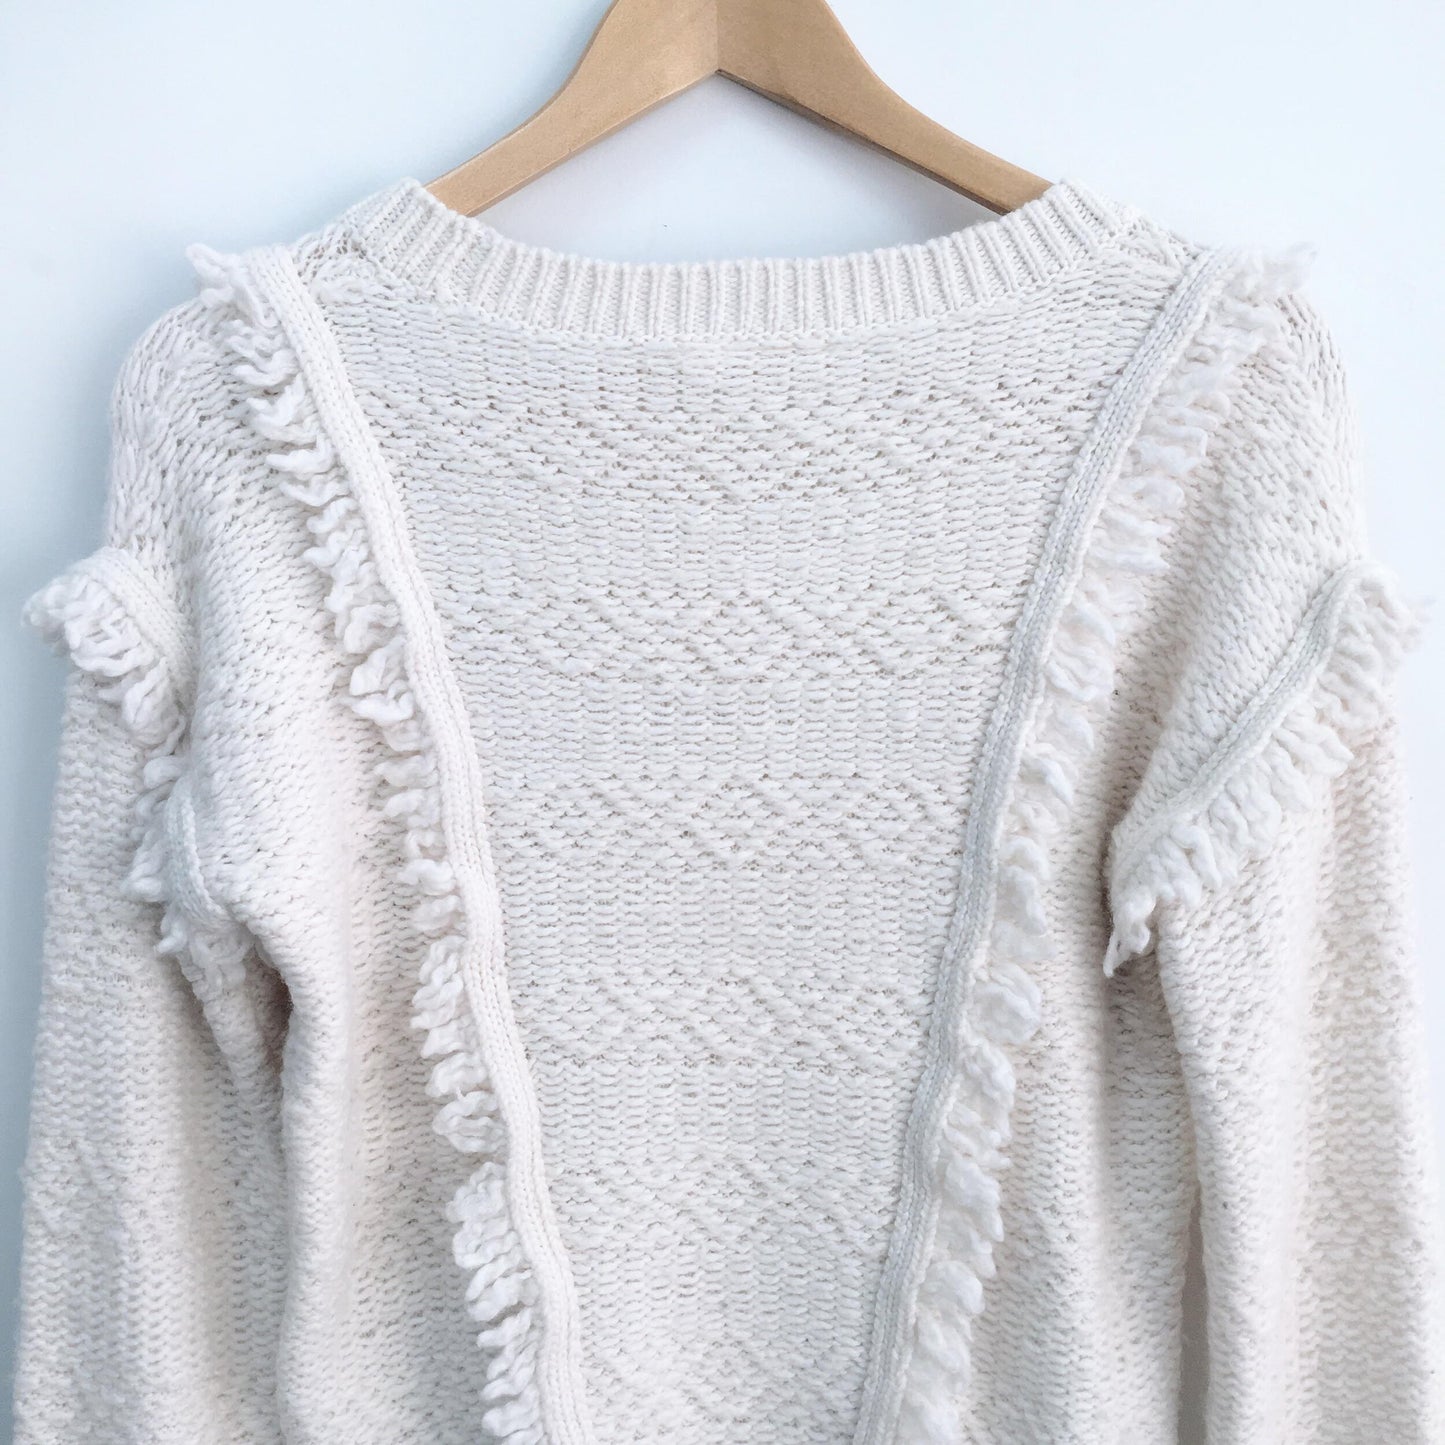 GAP Fringe Knit Sweater - size Medium